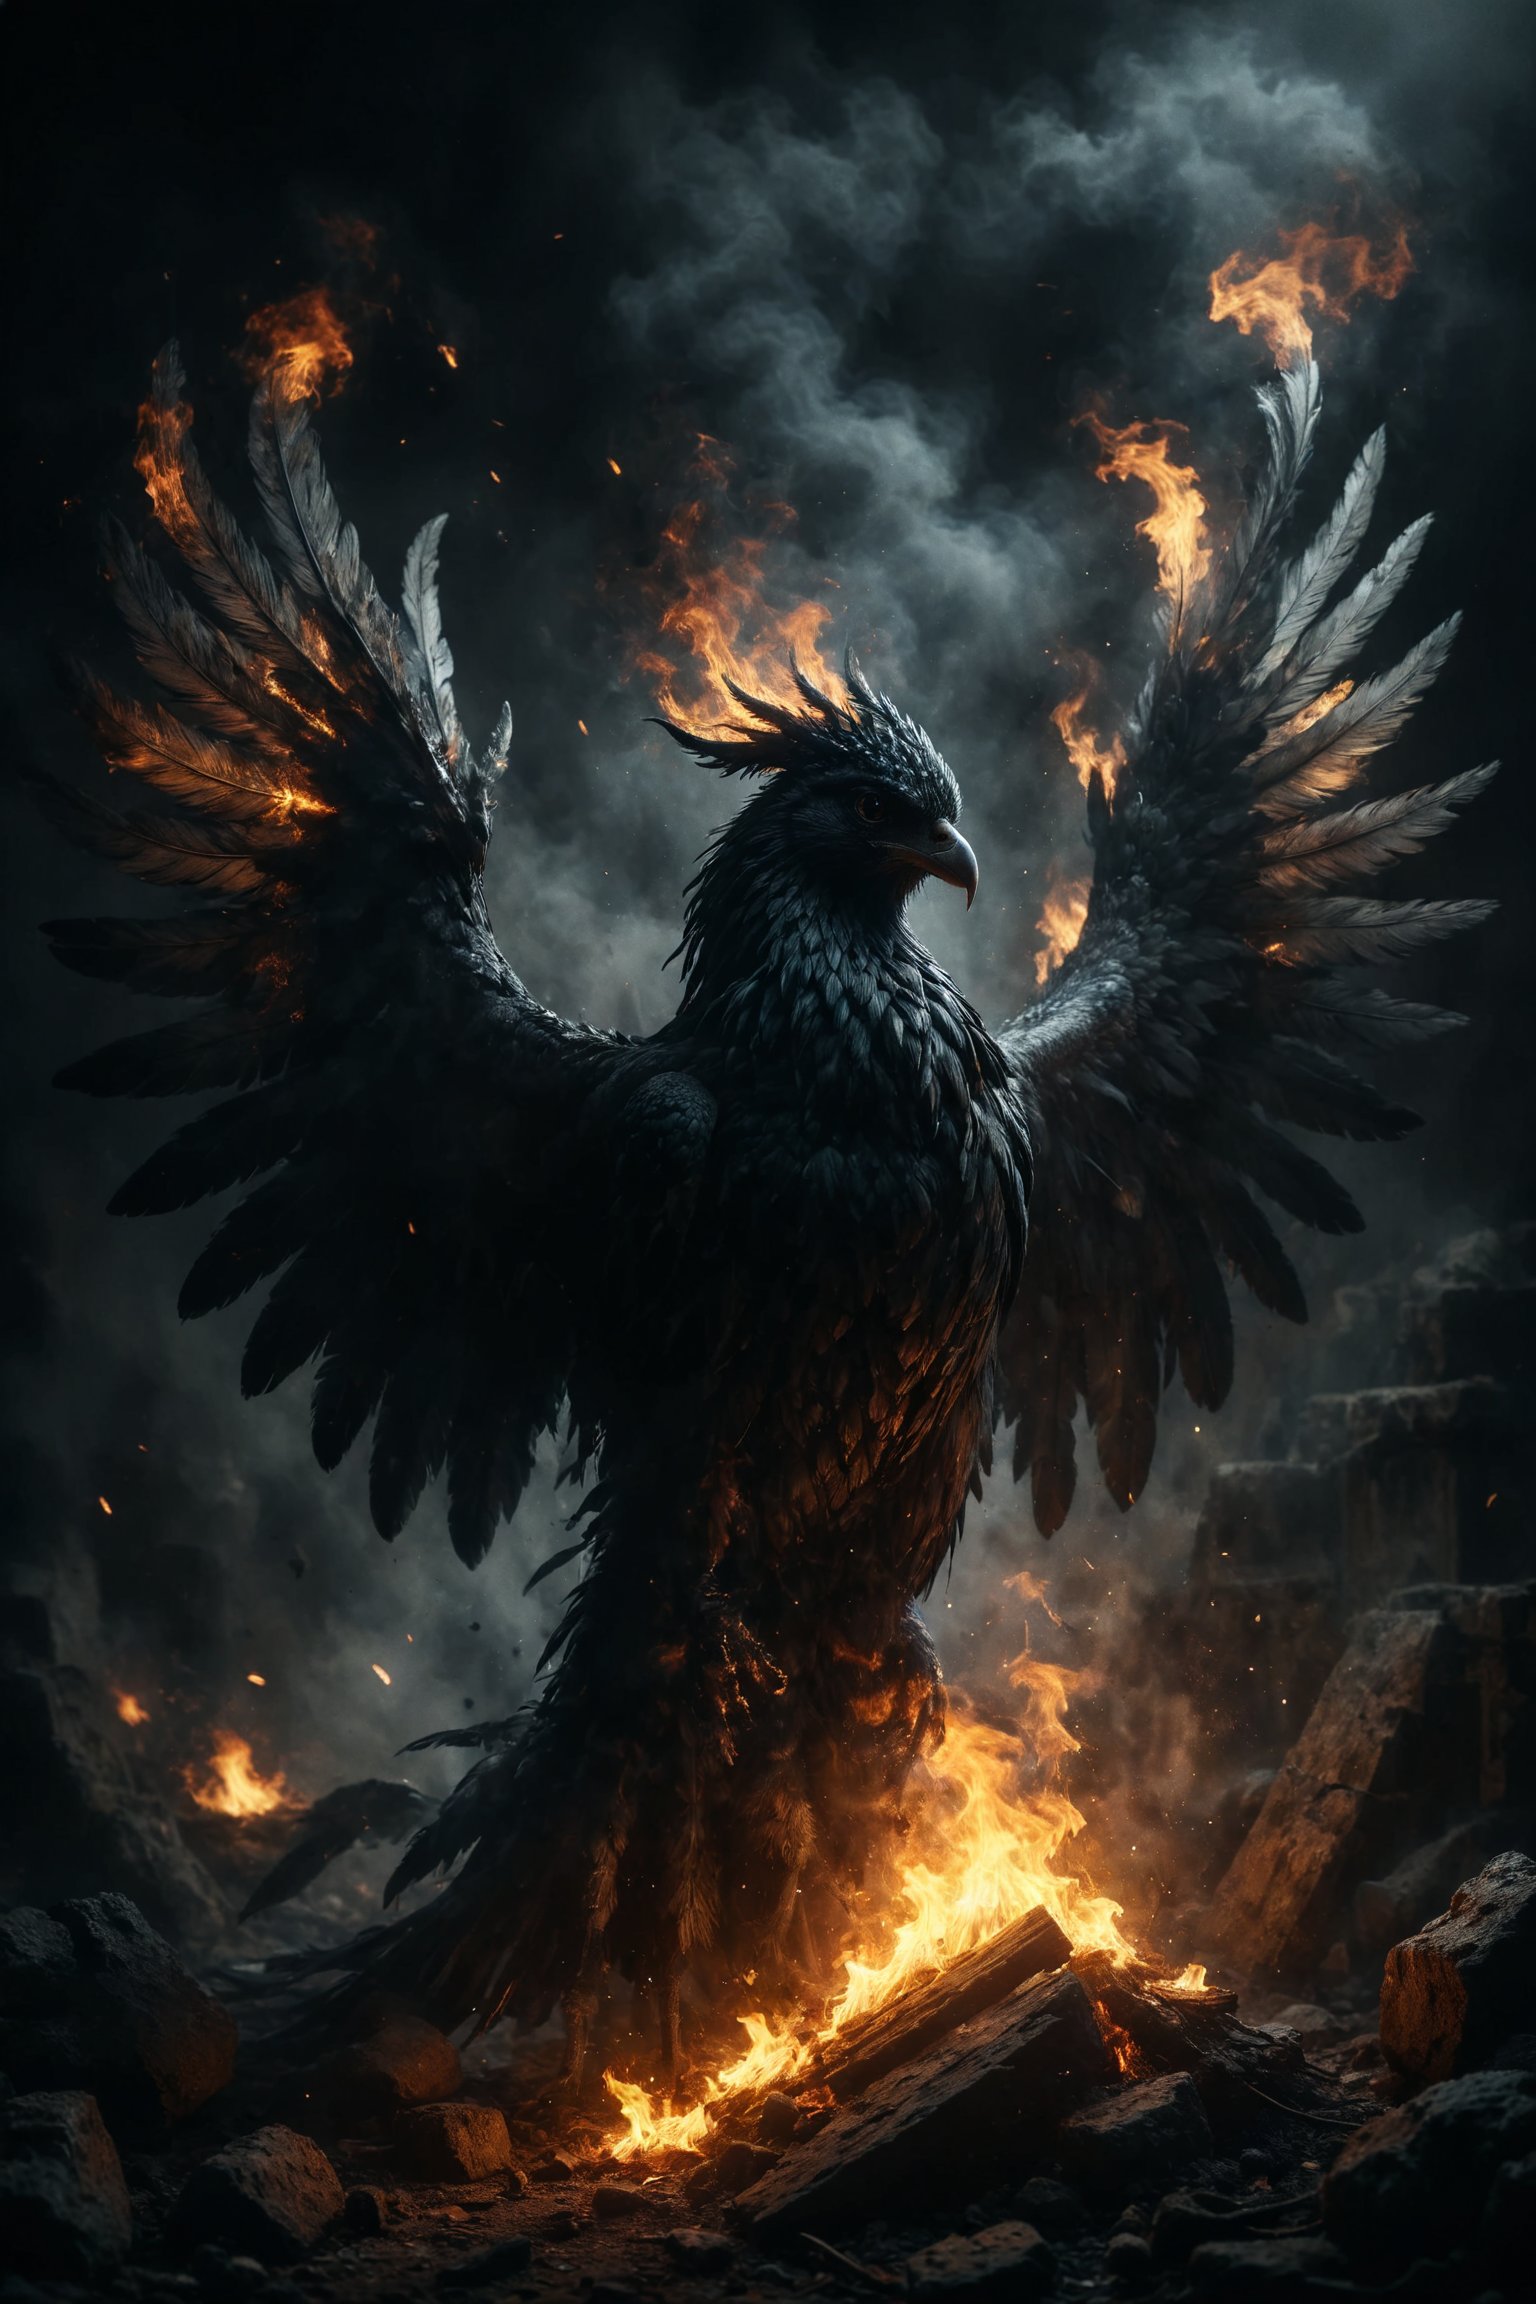 mitica y misteriosa escena gotica de Un fénix oscuro emergiendo de las cenizas, con plumas que brillan con un fuego interno y misterioso.